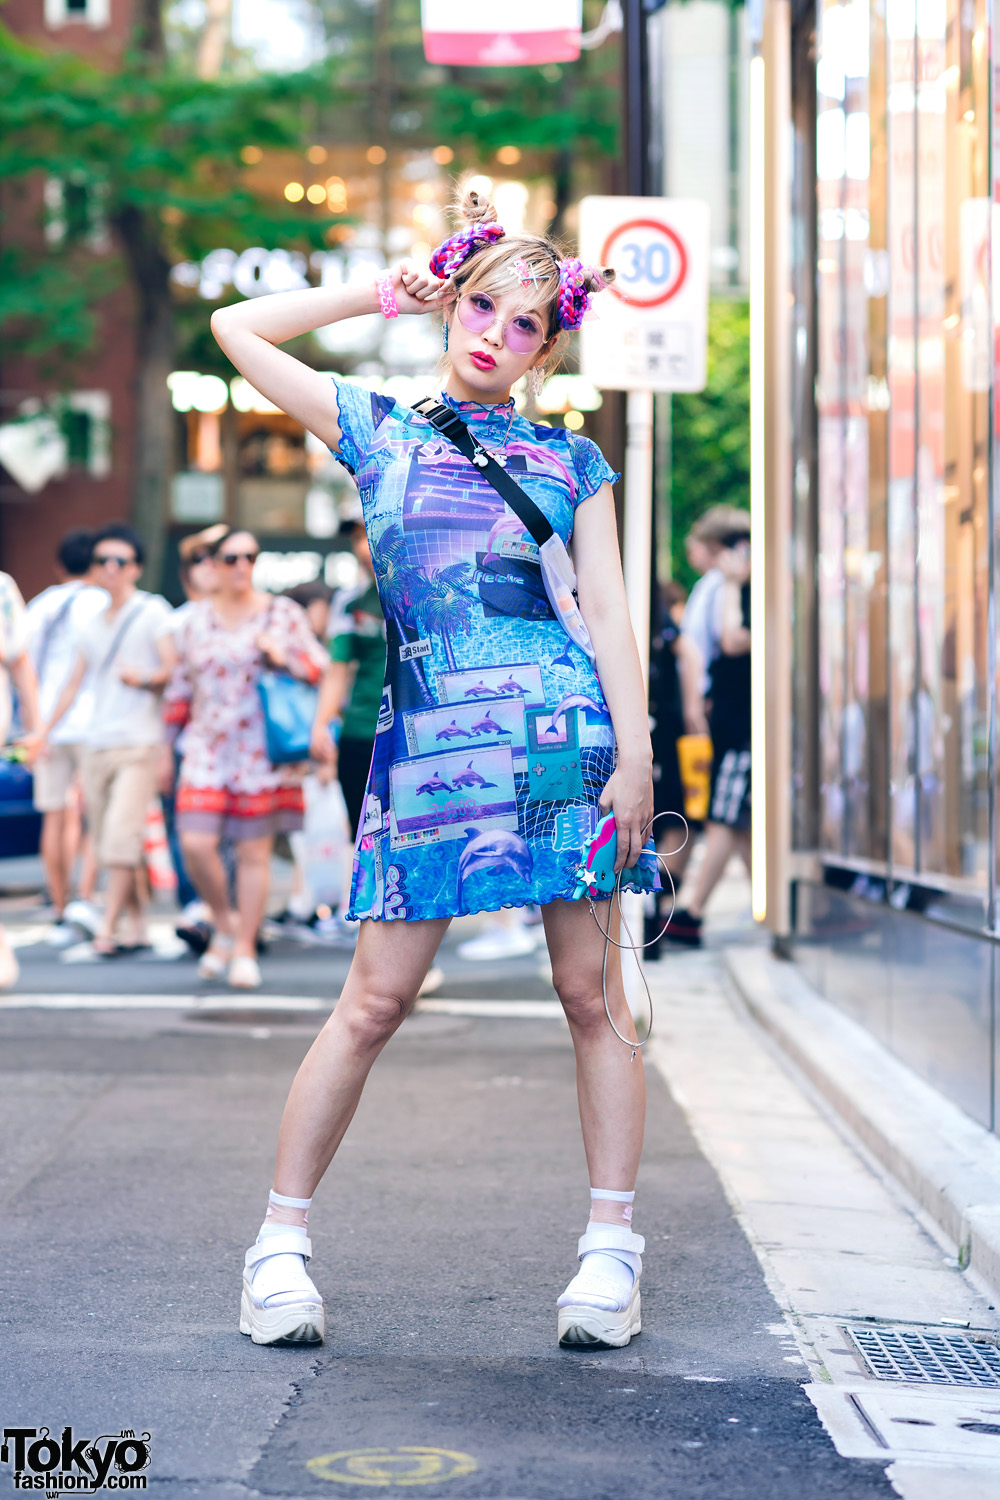 Harajuku Monster Girl w/ HOROSCOPEZ Vaporwave Dress, Gallerie Tokyo Mesh Bag & Platform Glitter Sandals